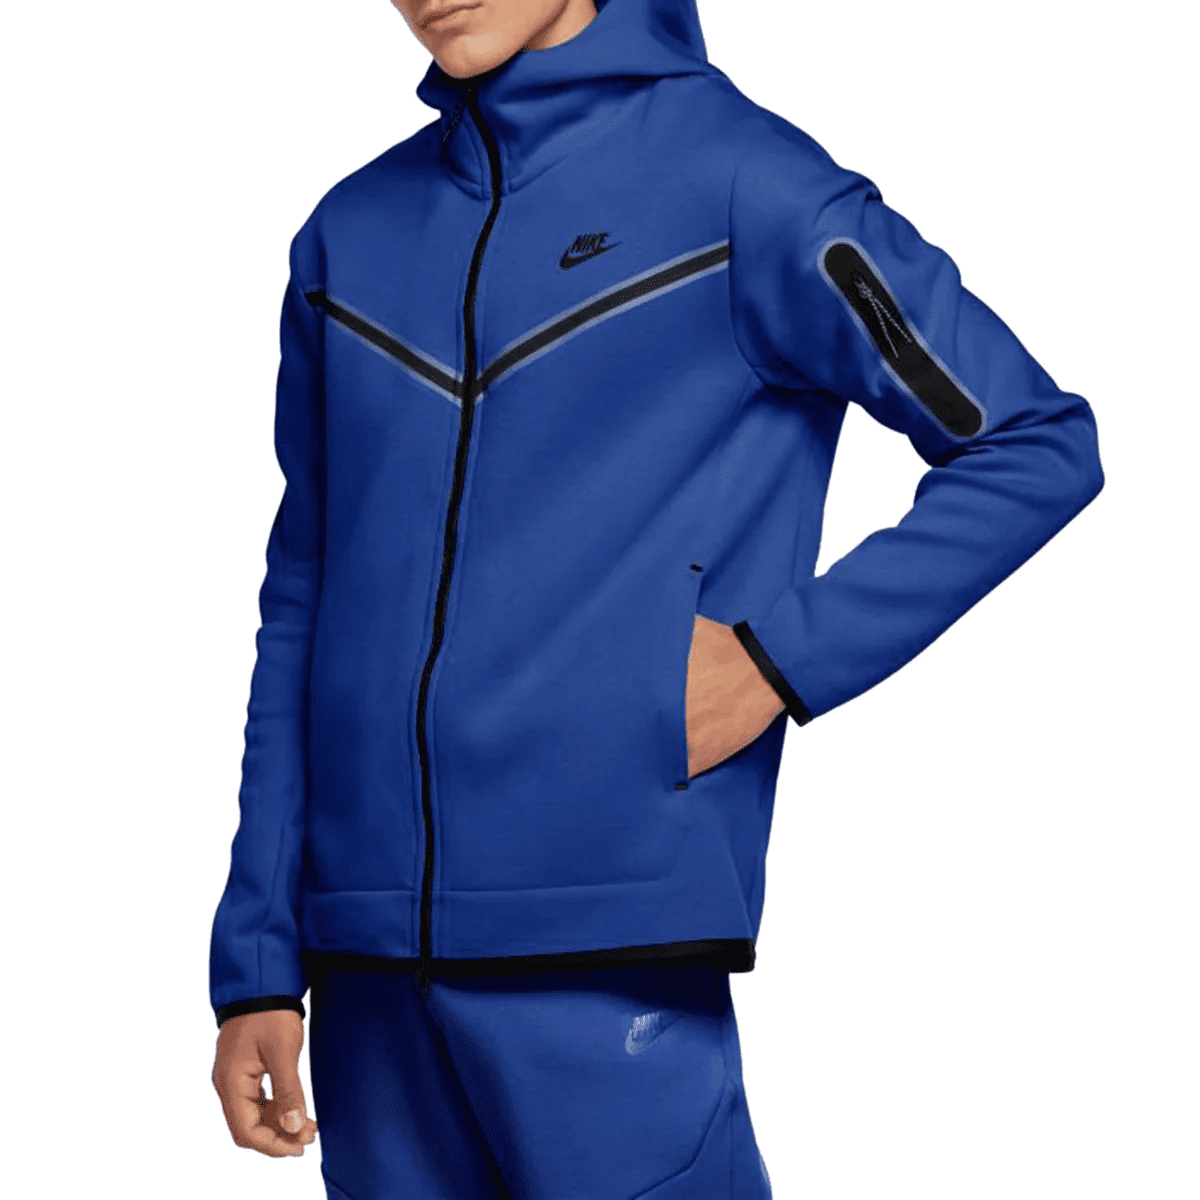 Nike Tech Fleece Pants Joggers Sweatpants Obsidian Navy Blue CU4495-410  Men's | eBay